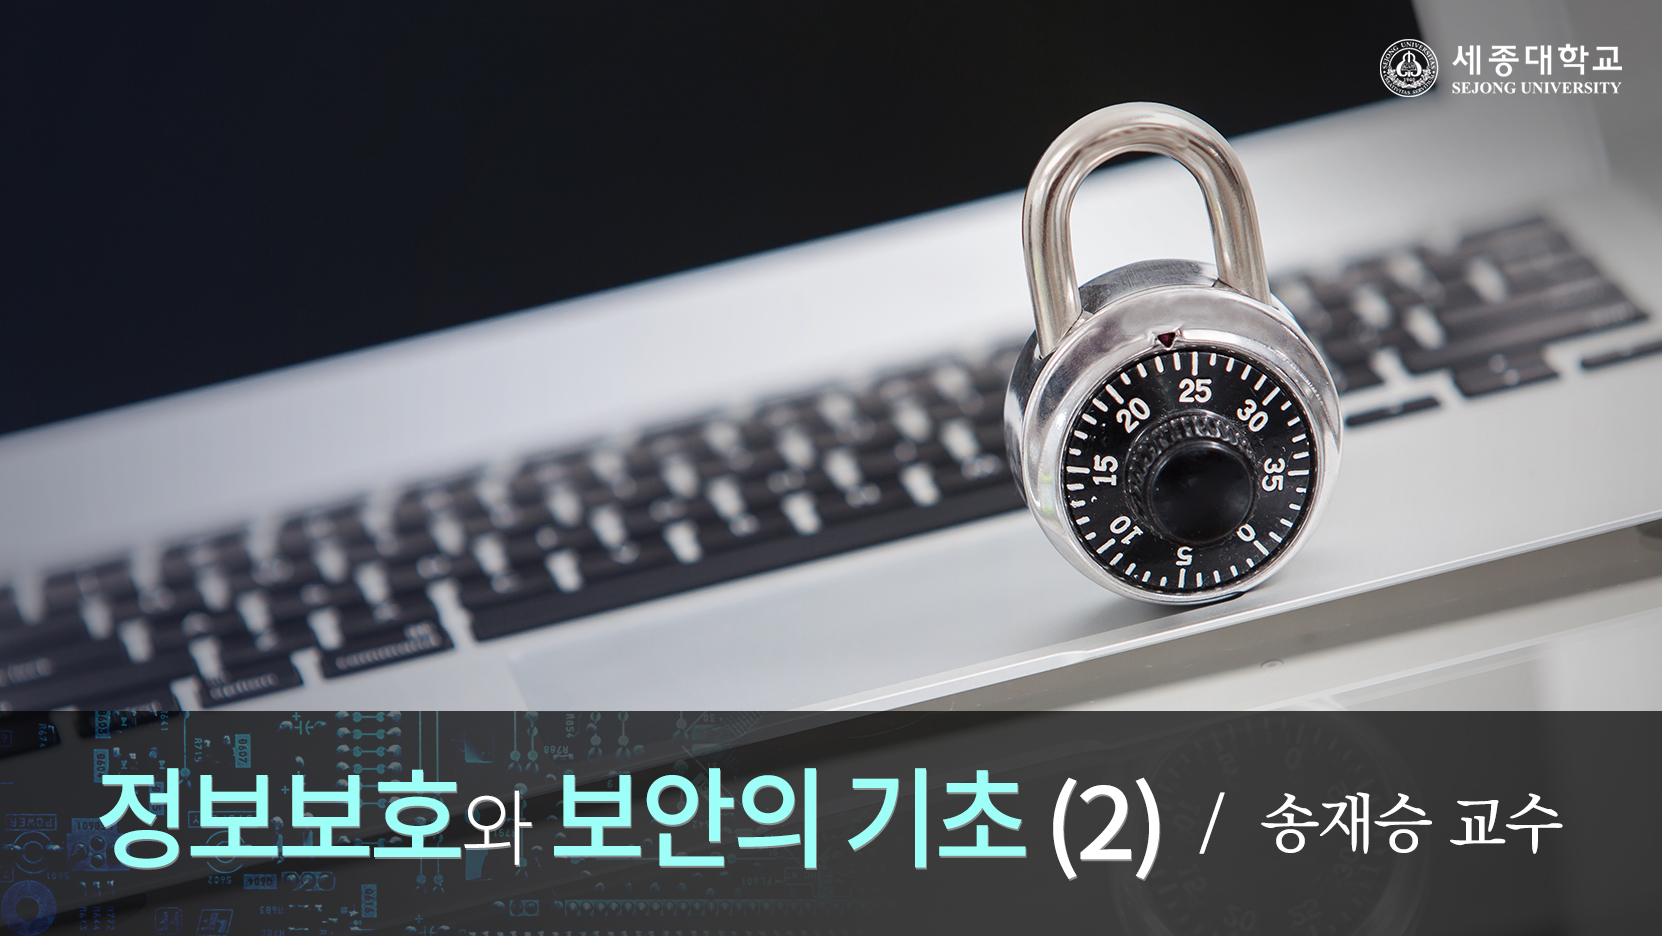 정보보호와 보안의 기초Ⅱ 개강일 2016-10-31 종강일 2016-12-19 강좌상태 종료